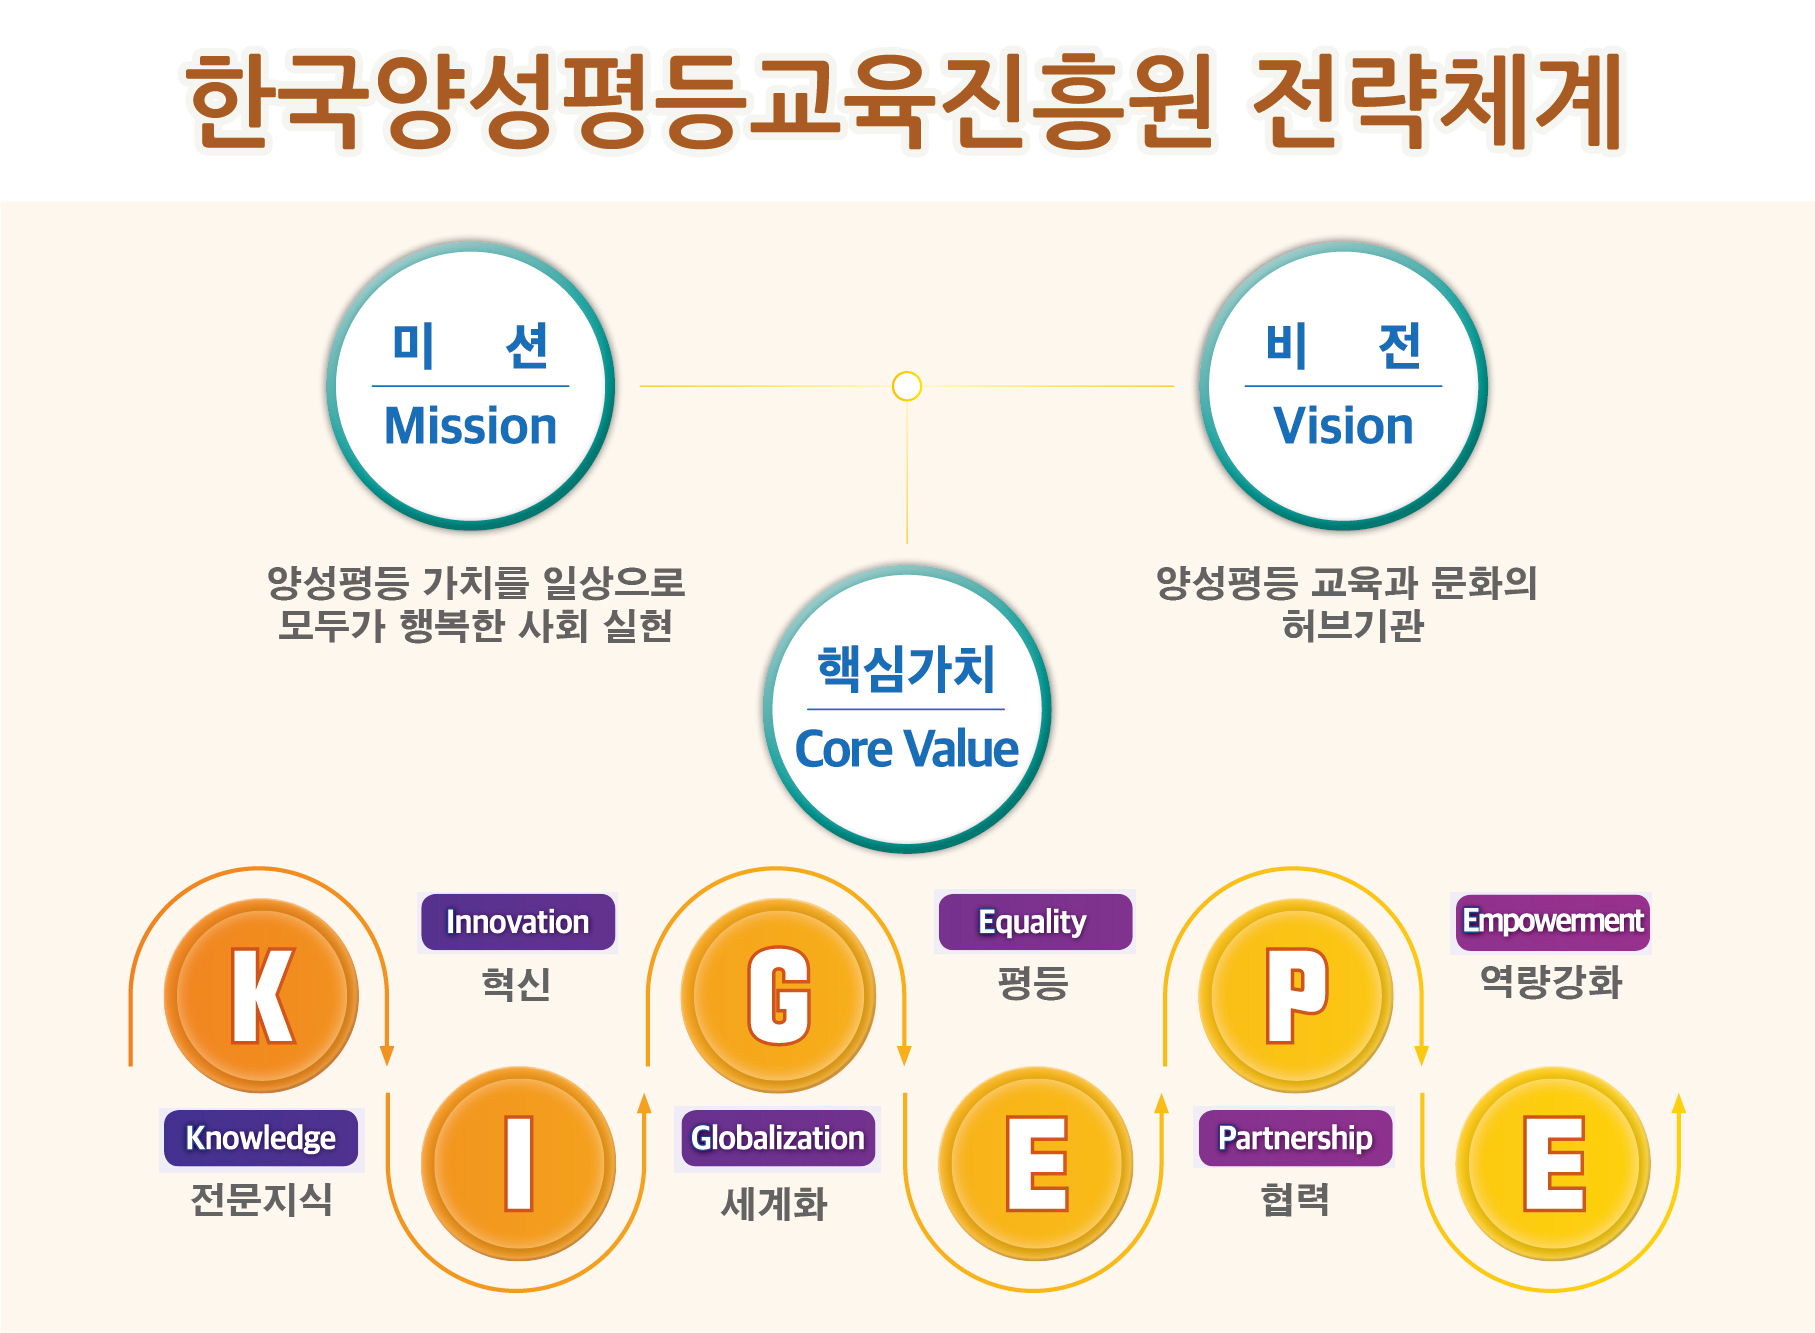 한국양성평등교육진흥원 전략체계. 미션(Mission) : 양성평등 가치를 일상으로 모두가 행복한 사회 실현, 핵심가치(Core Value), 비전(Vision) : 양성평등 교육과 문화의 허브기관. K(Knowledge) 전문지식, I(Innovation) 혁신, G(Globalization) 세계화, E(Equality) 평등, P(Partnership) 협력, E(Empowerment) 역량강화.